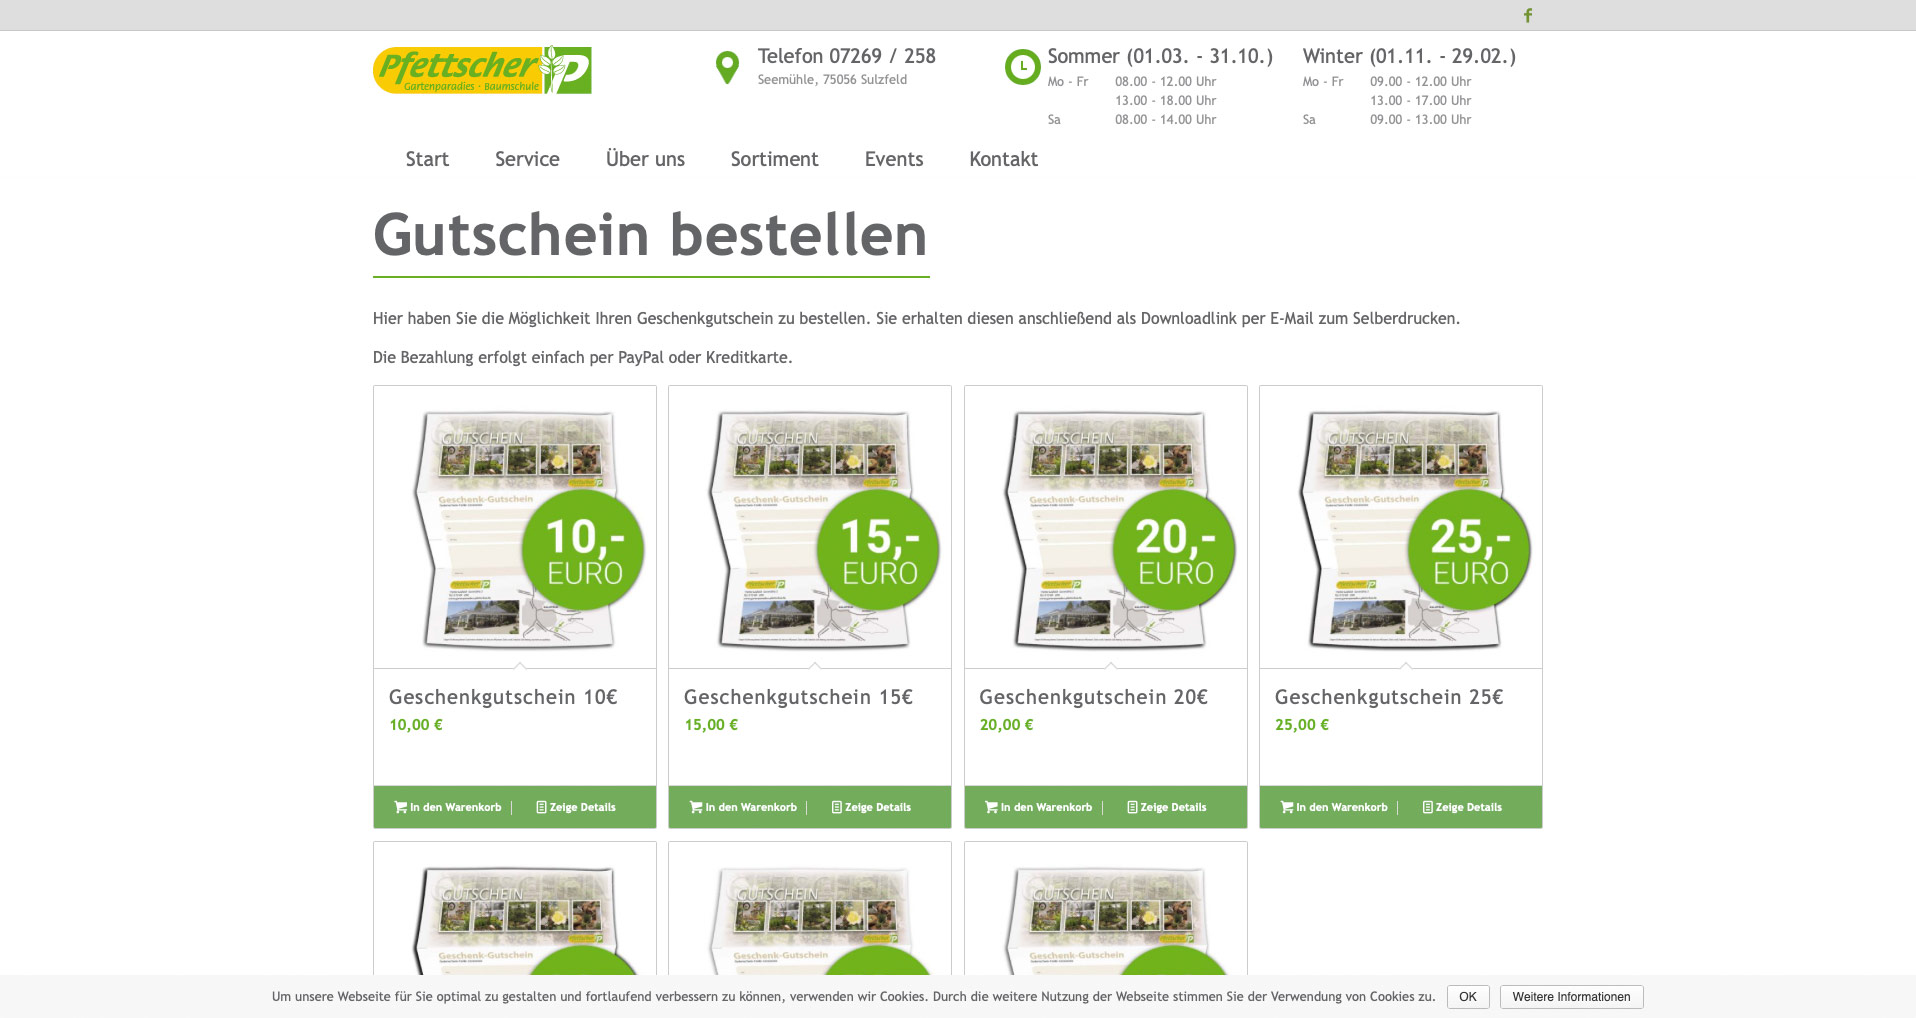 P1XEL - WooCommerce Gutschein Bestellsystem für das Gartenparadies Pfettscher in Sulzfeld